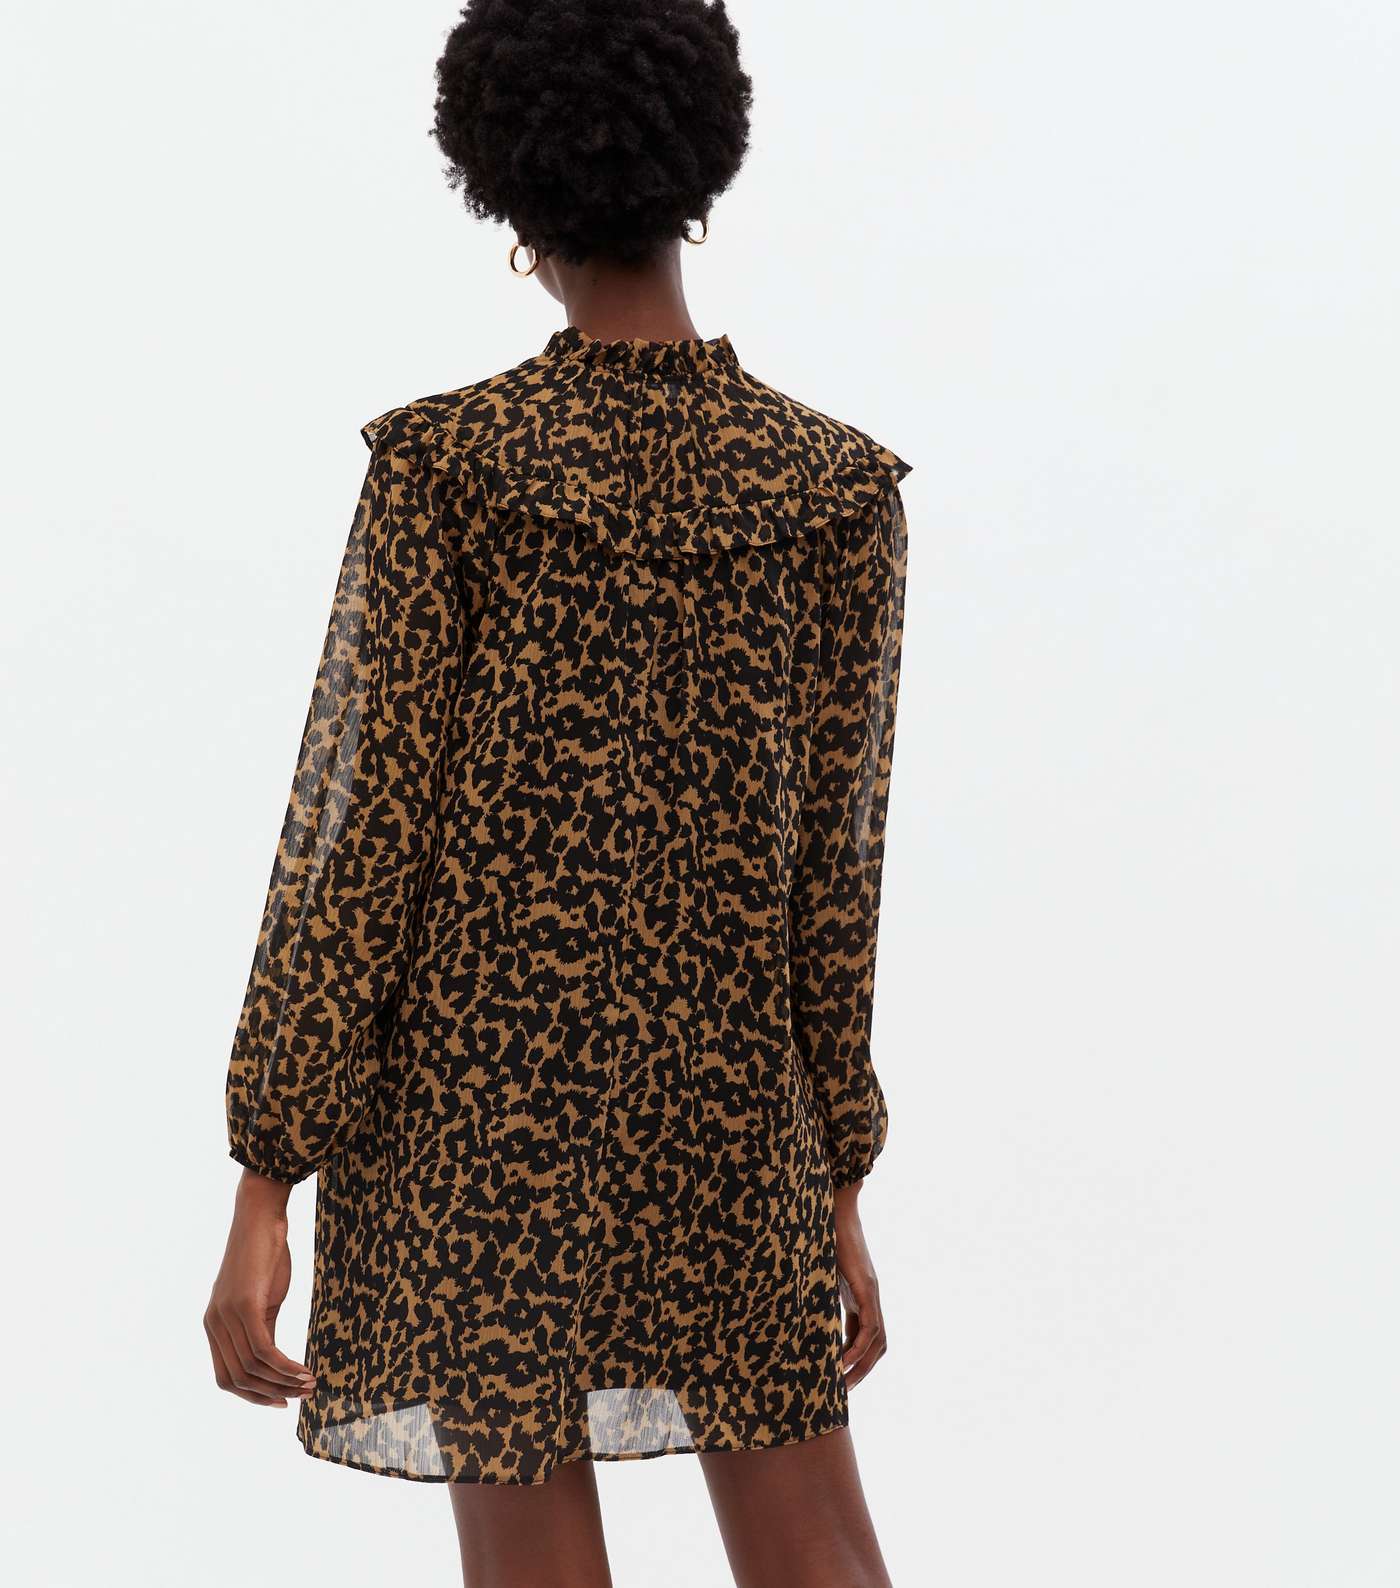 Brown Leopard Print Chiffon Frill Tie High Neck Mini Dress Image 4